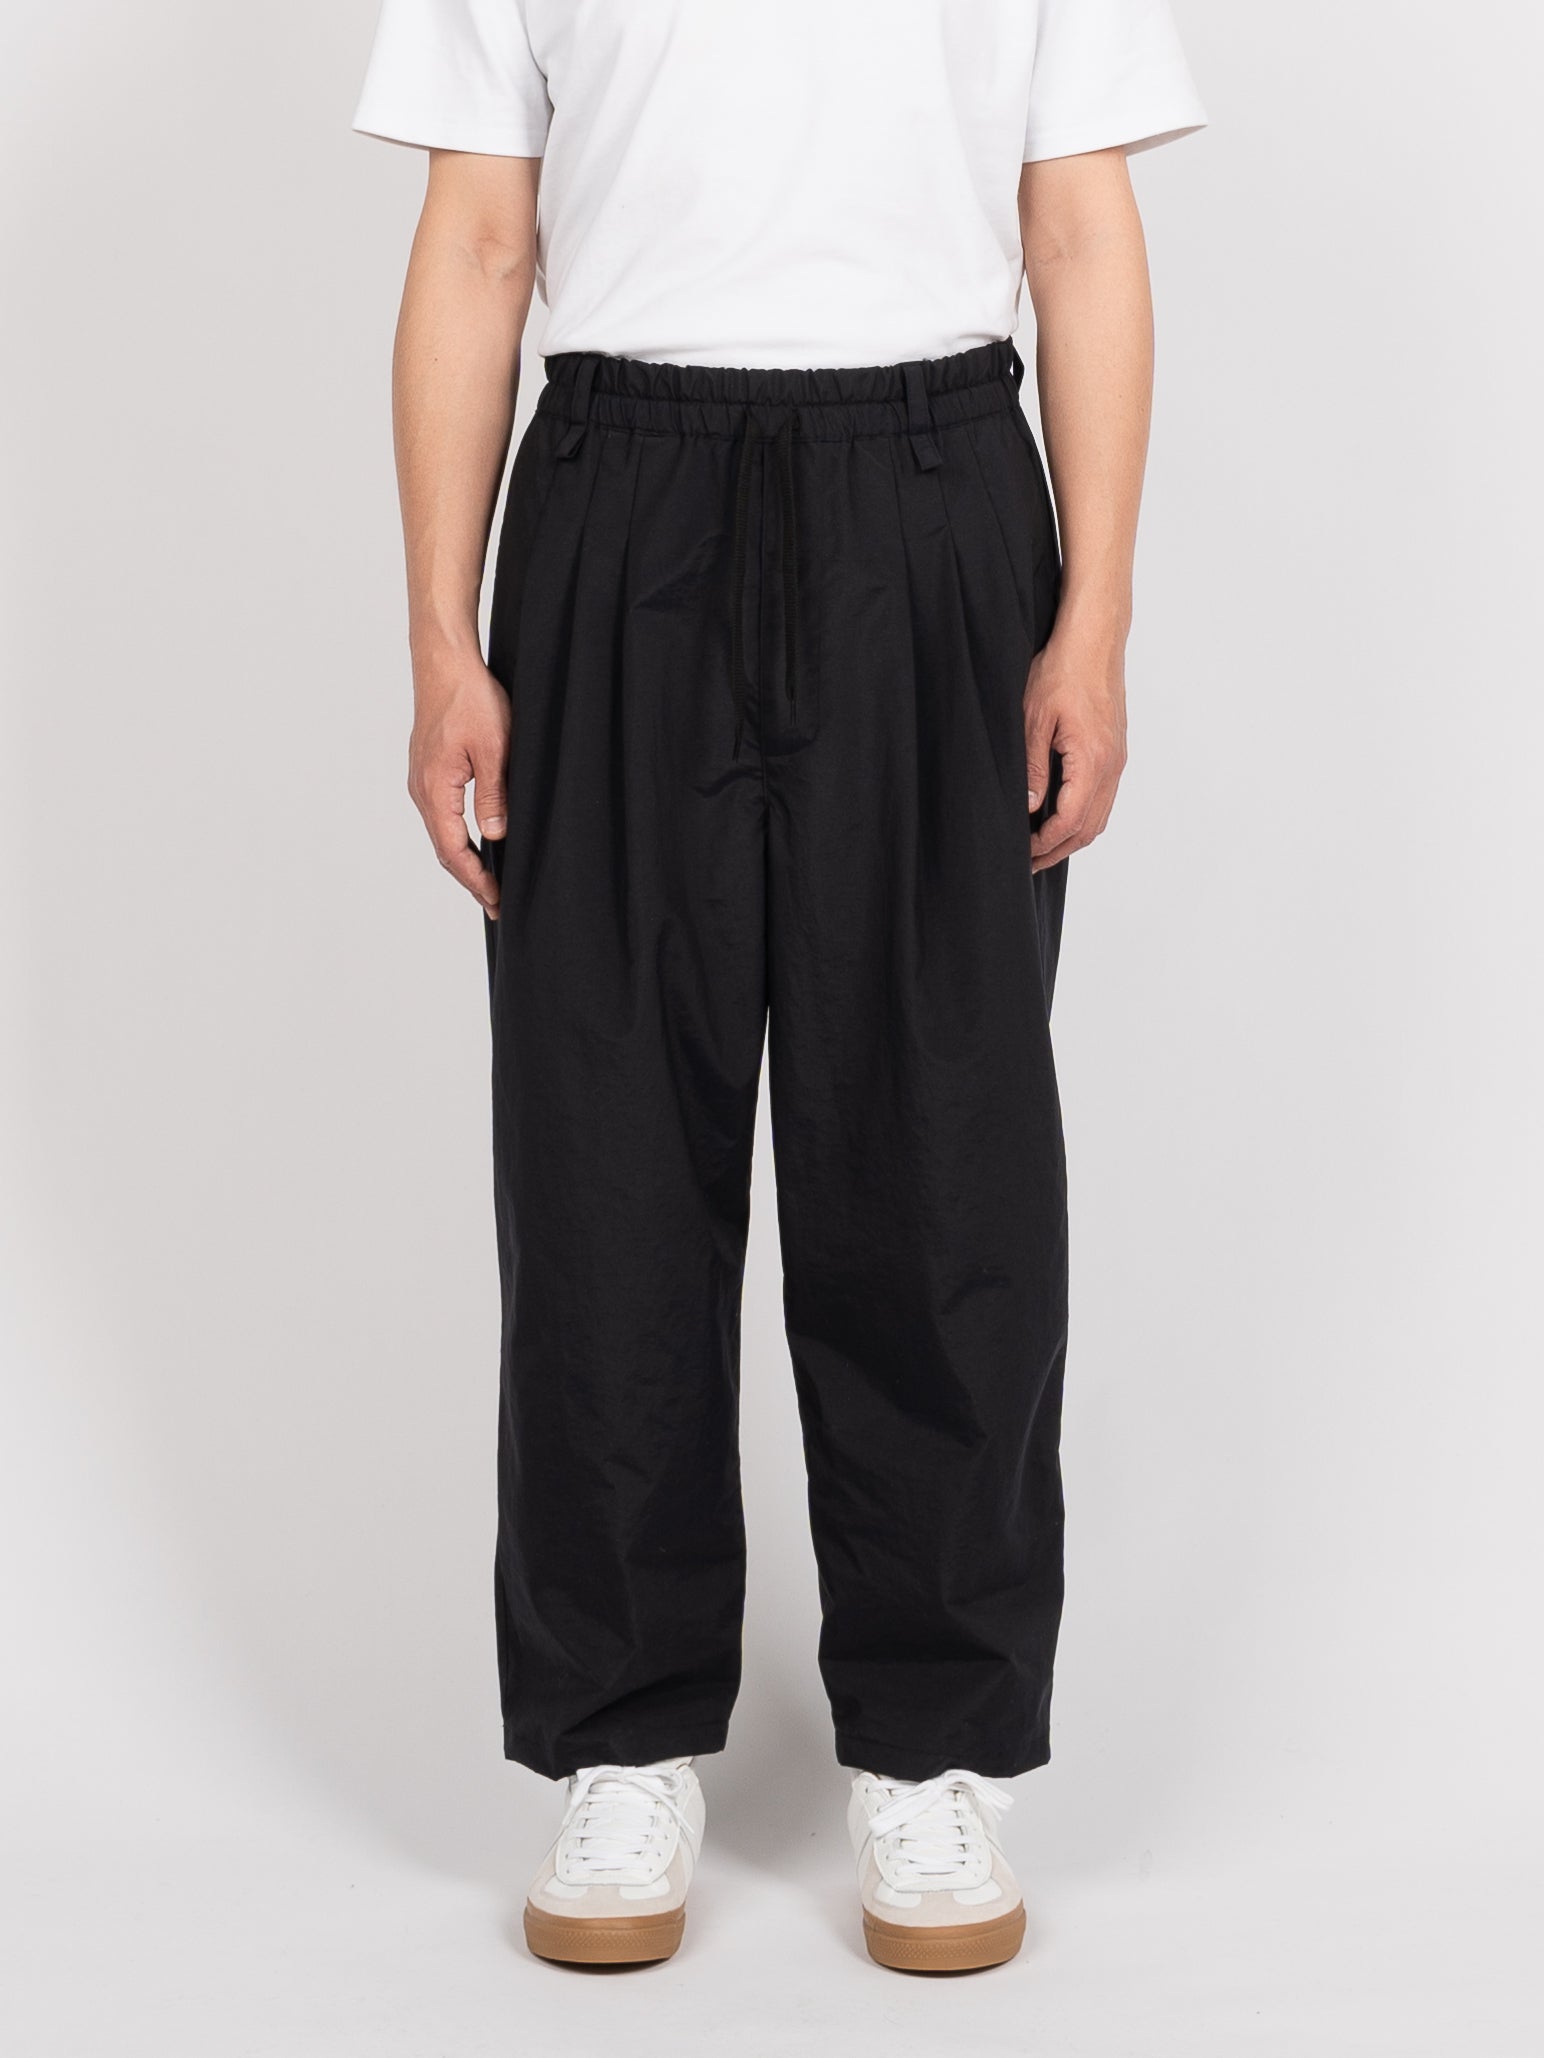 is-ness Packable EZ Pants (Black)